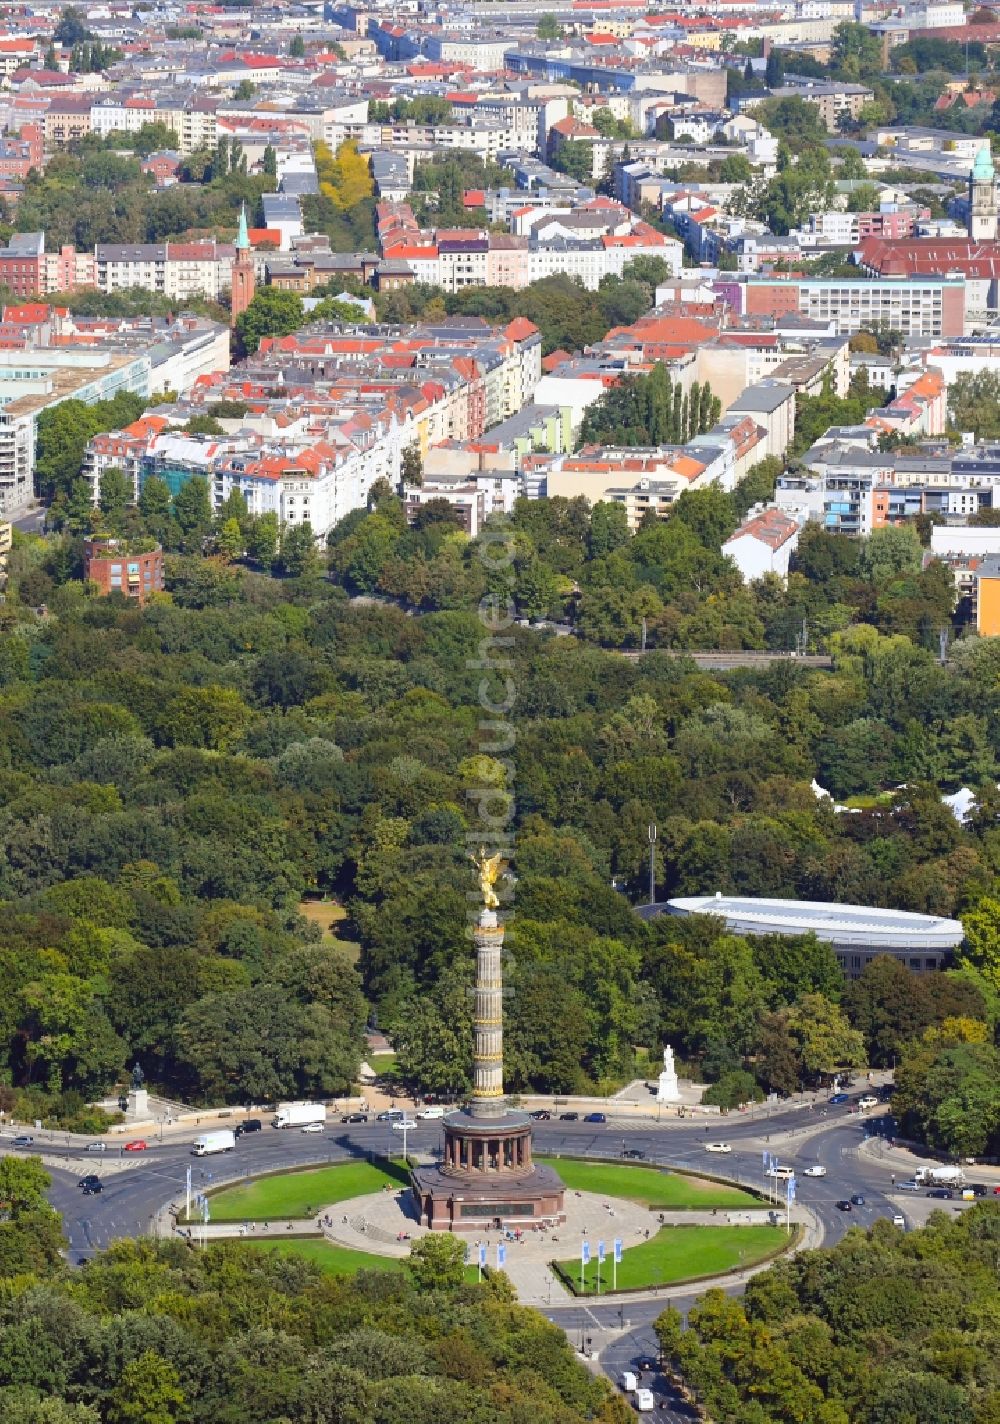 Luftaufnahme Berlin - Kreisverkehr - Straßenverlauf an der Siegessäule - Großer Stern im Parkgelände des Tiergartens in Berlin